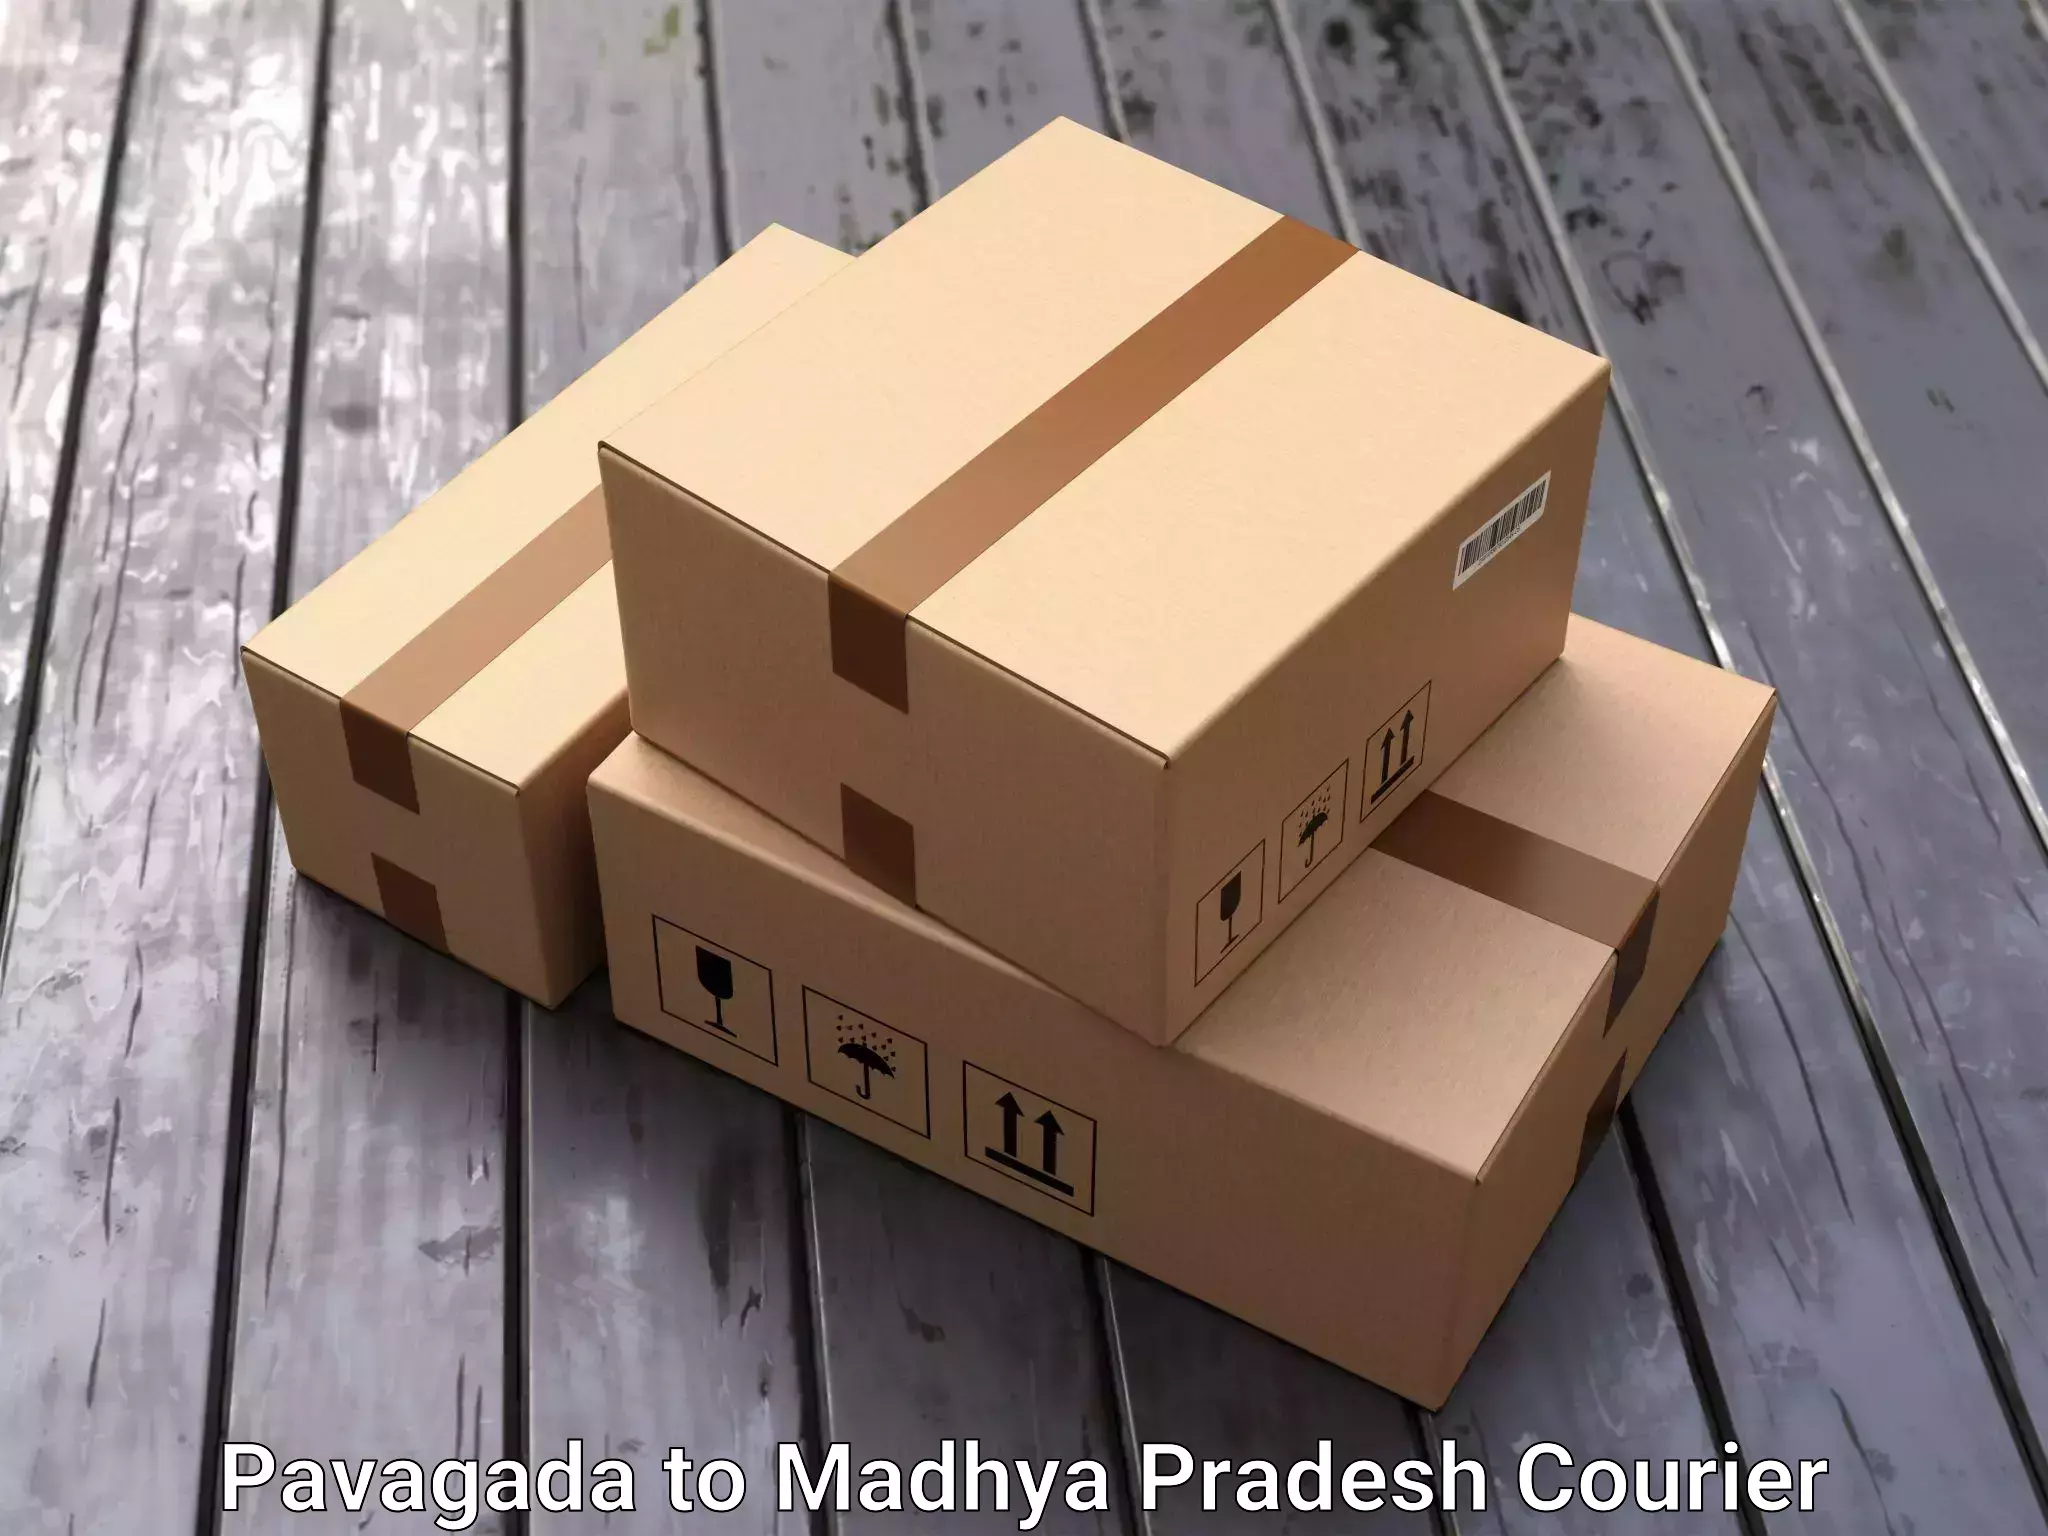 Furniture relocation experts Pavagada to Amarwara